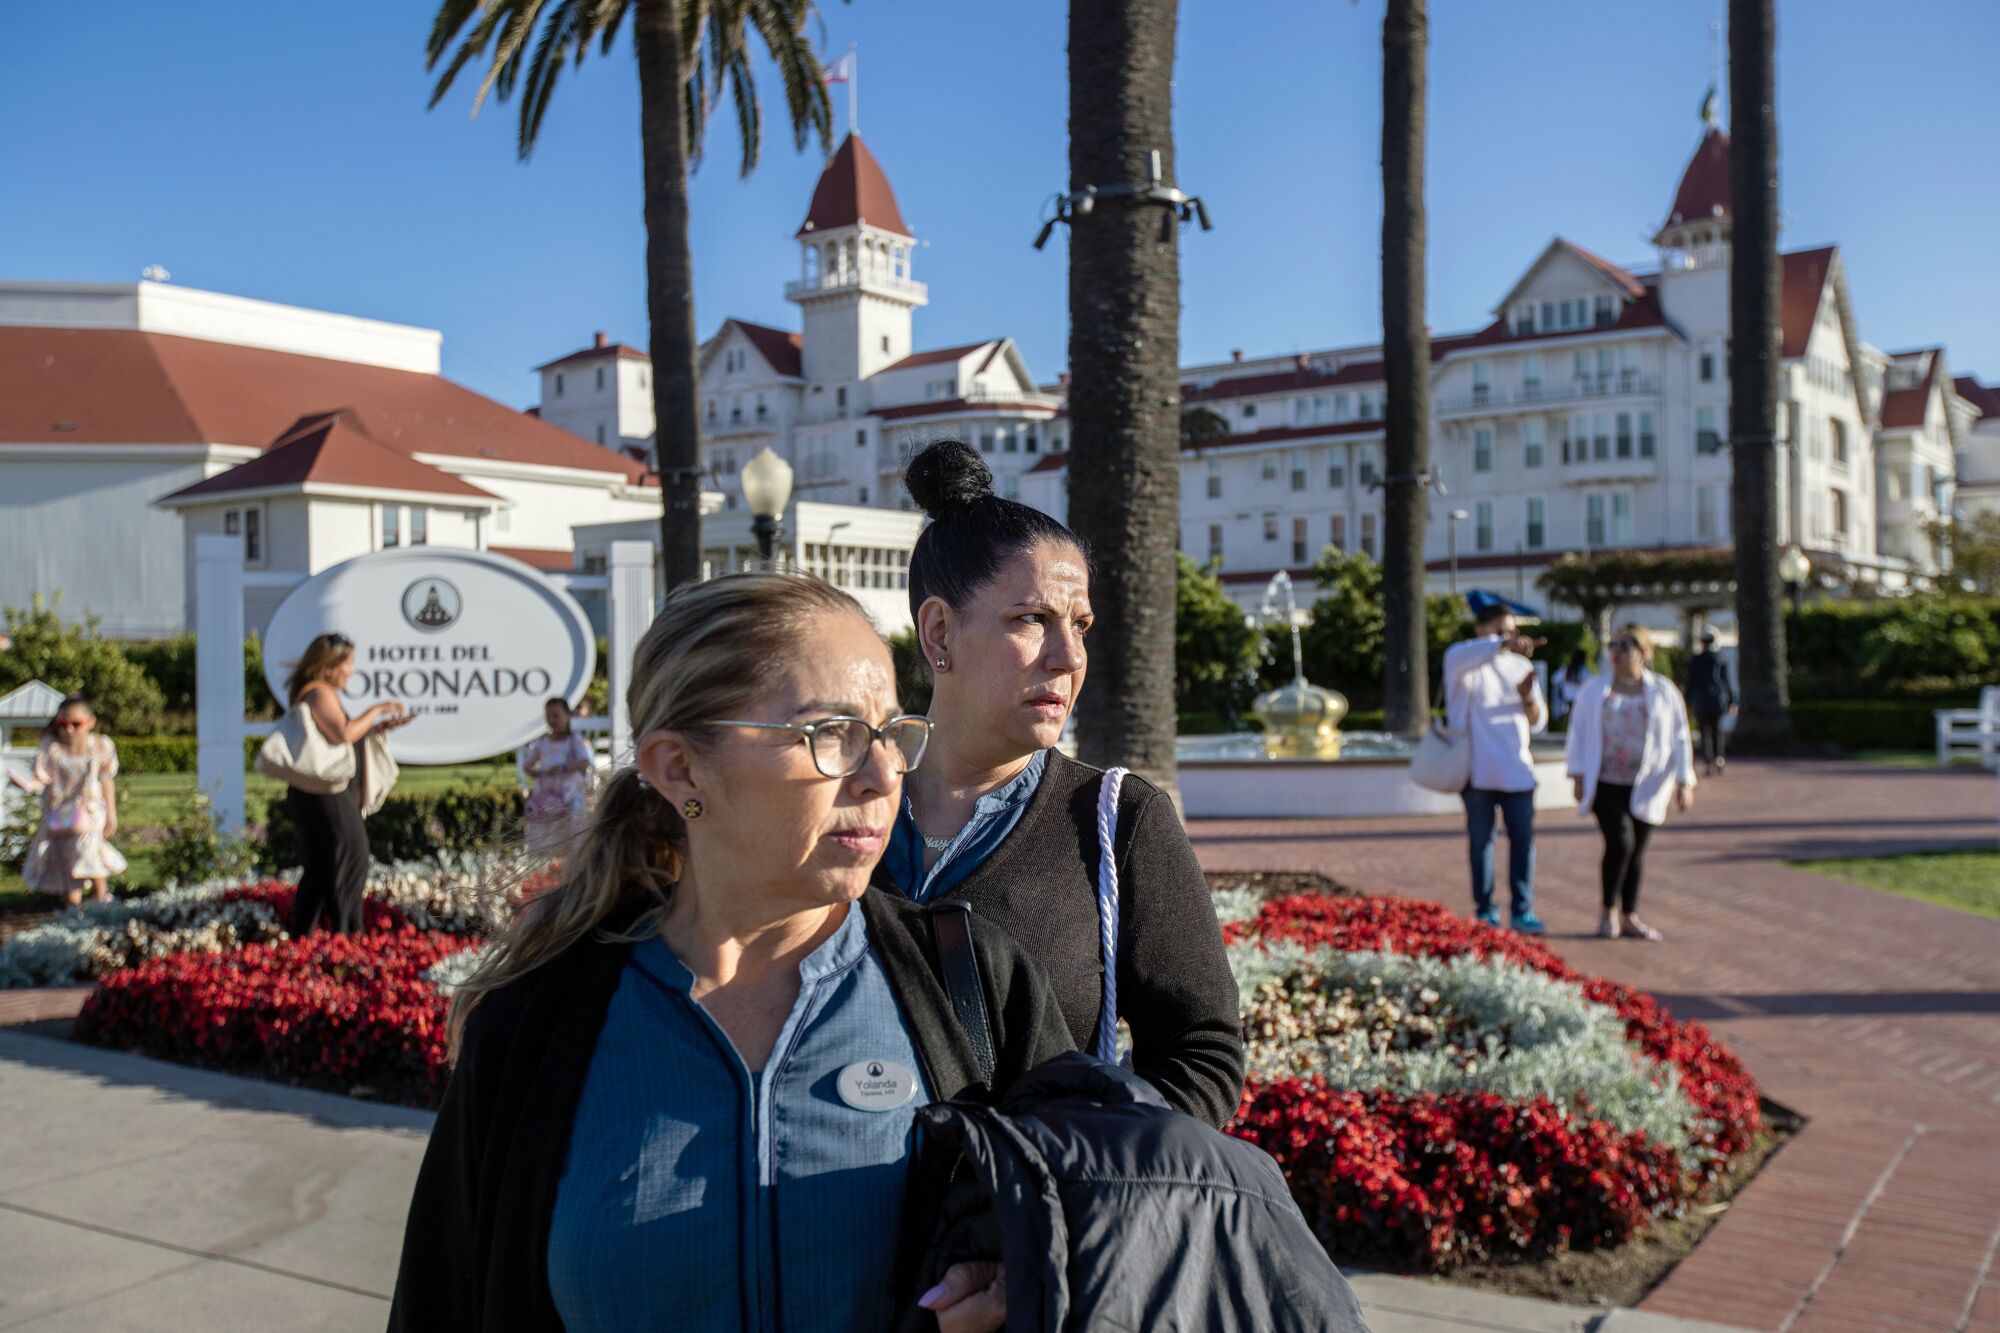 Coronado'daki Hotel del Coronado'nun önünde iki kadın duruyor